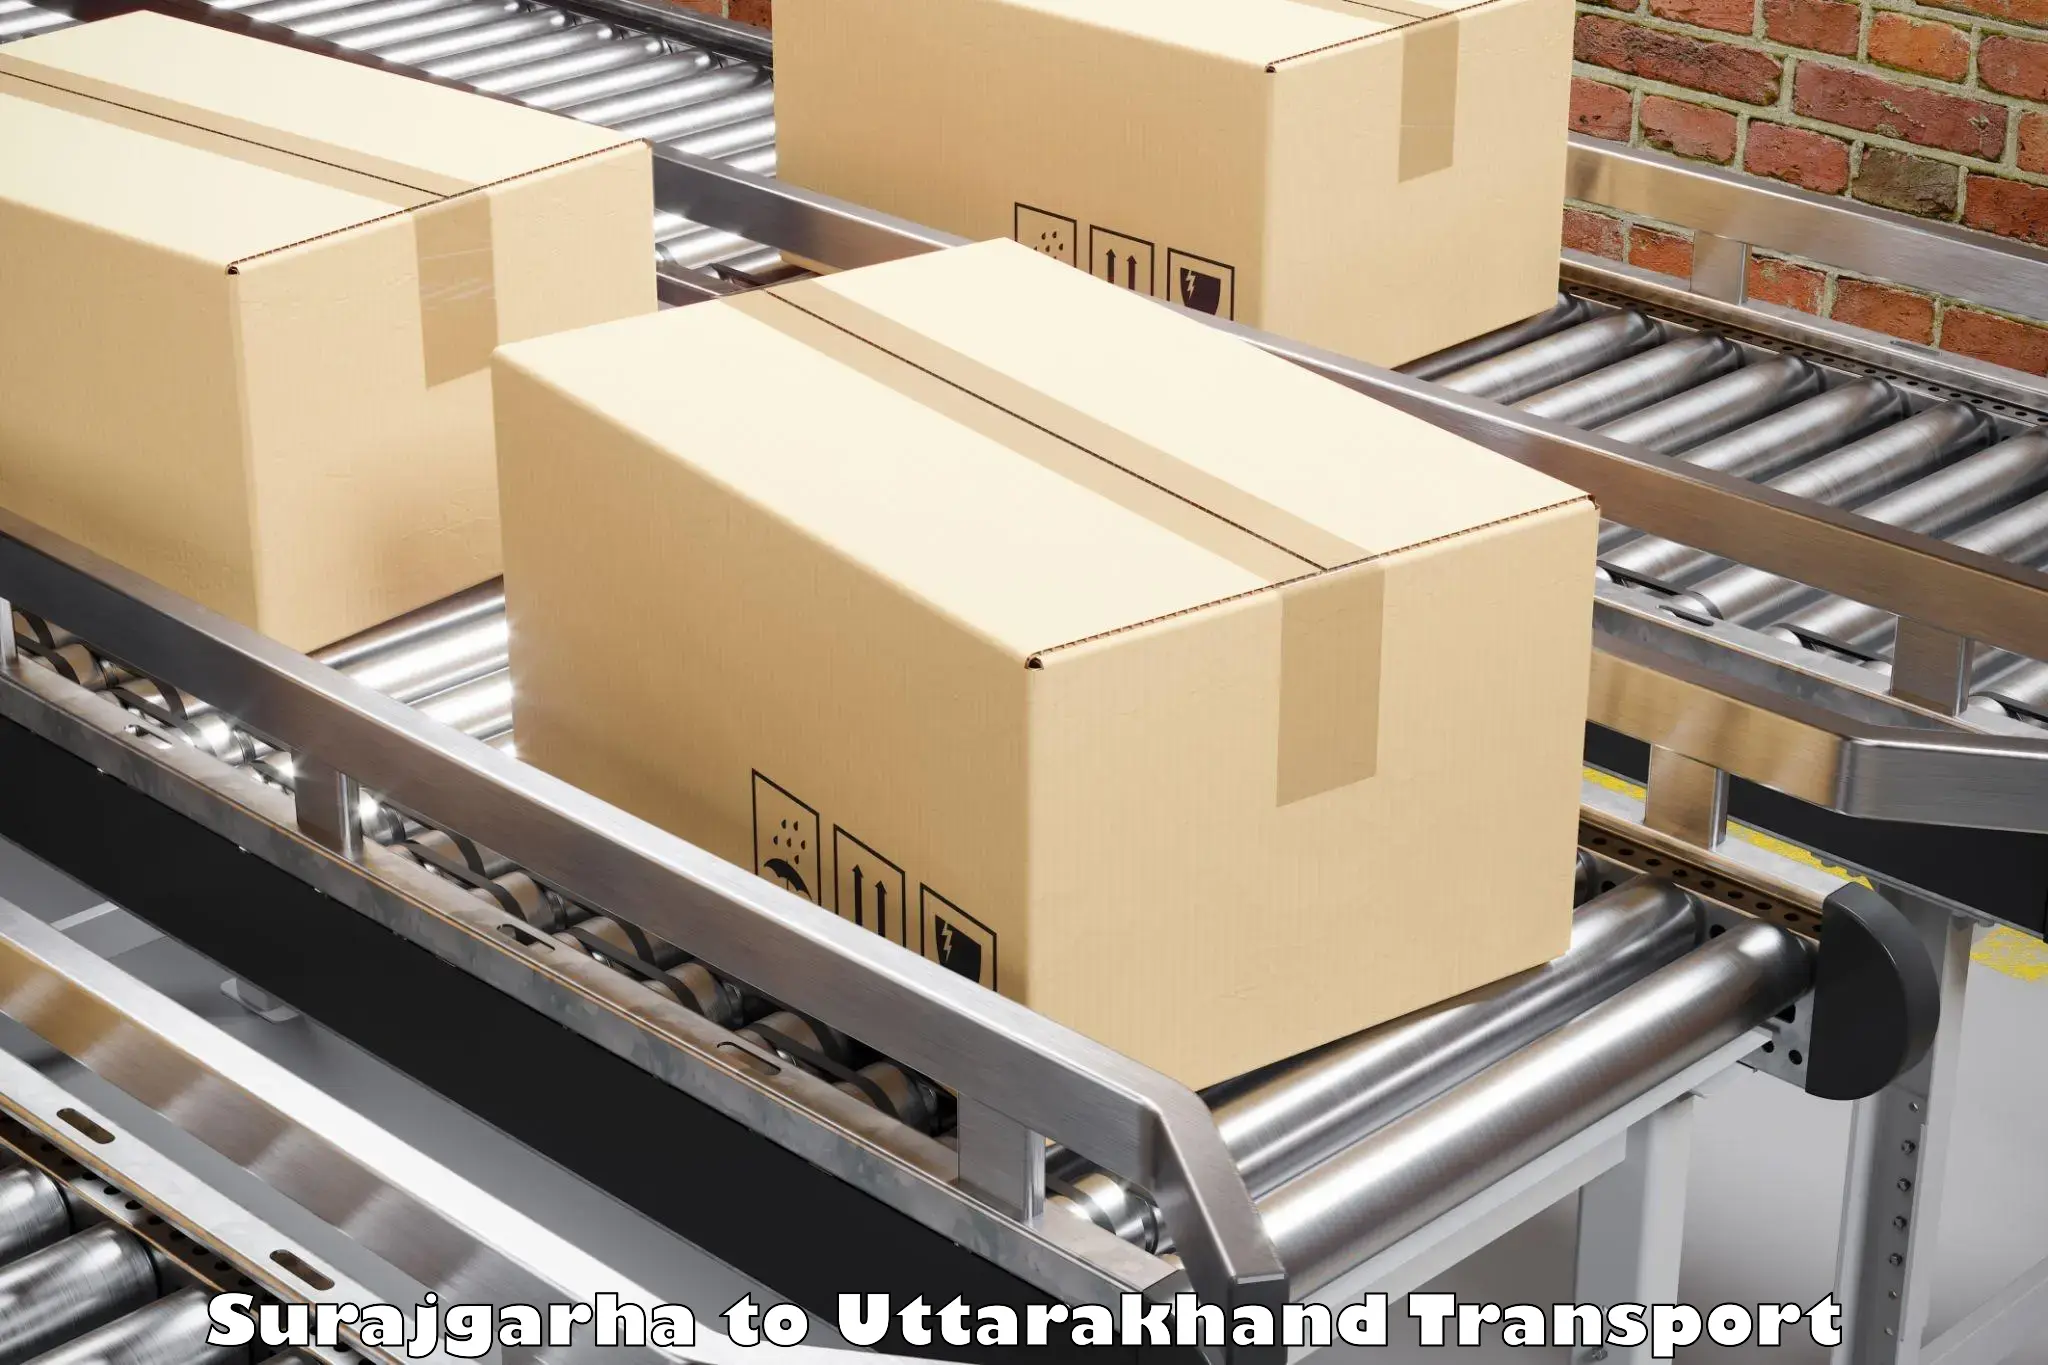 Daily parcel service transport Surajgarha to Kotdwara